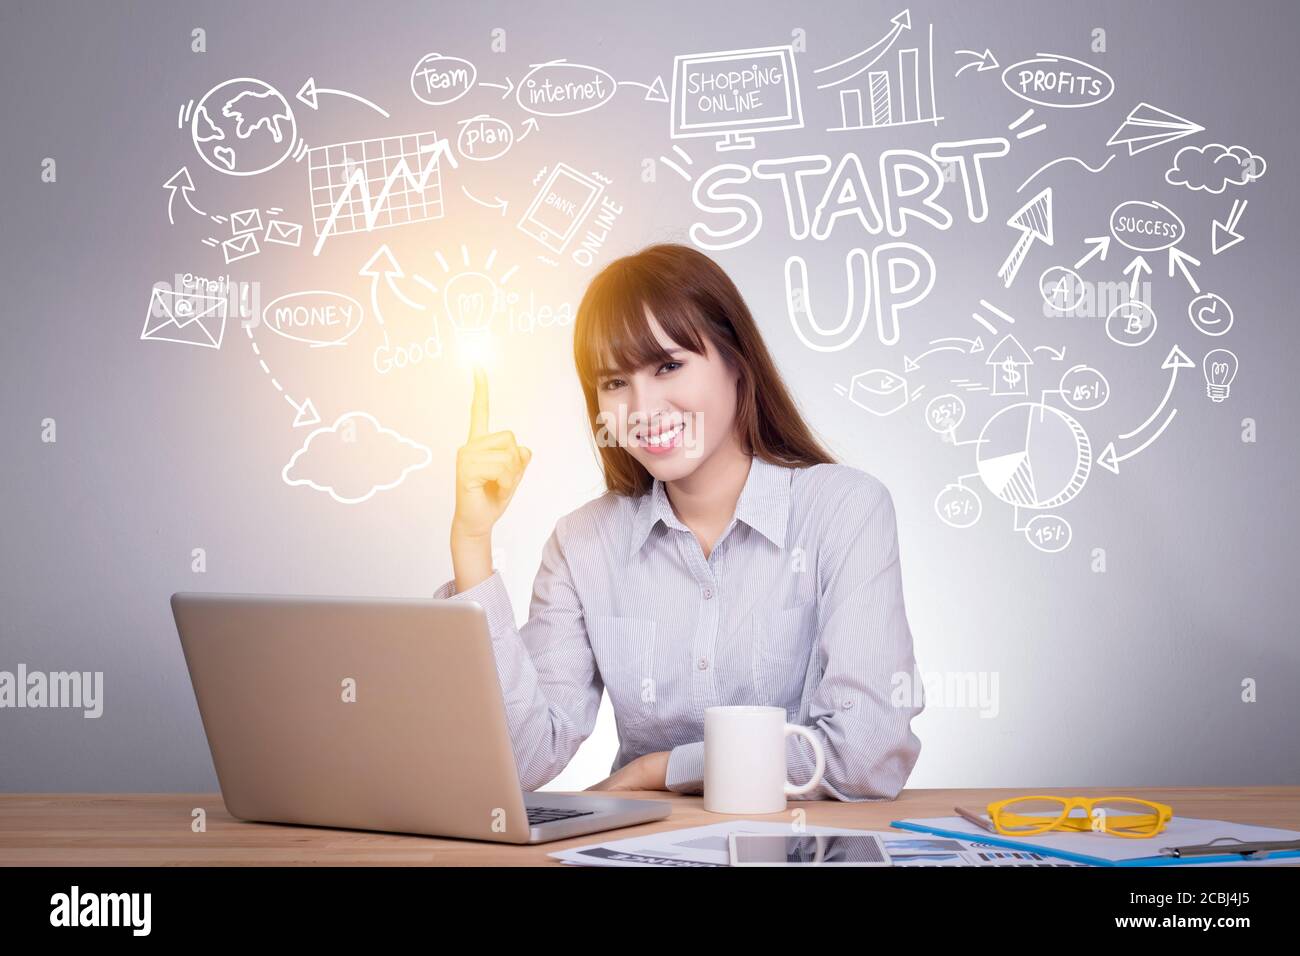 Business, Startup, Präsentation, Strategie und Menschen Konzept: Junge asiatische Geschäftsfrau mit Grafik kreative Idee für Startup-Business Skizze Plan. Stockfoto